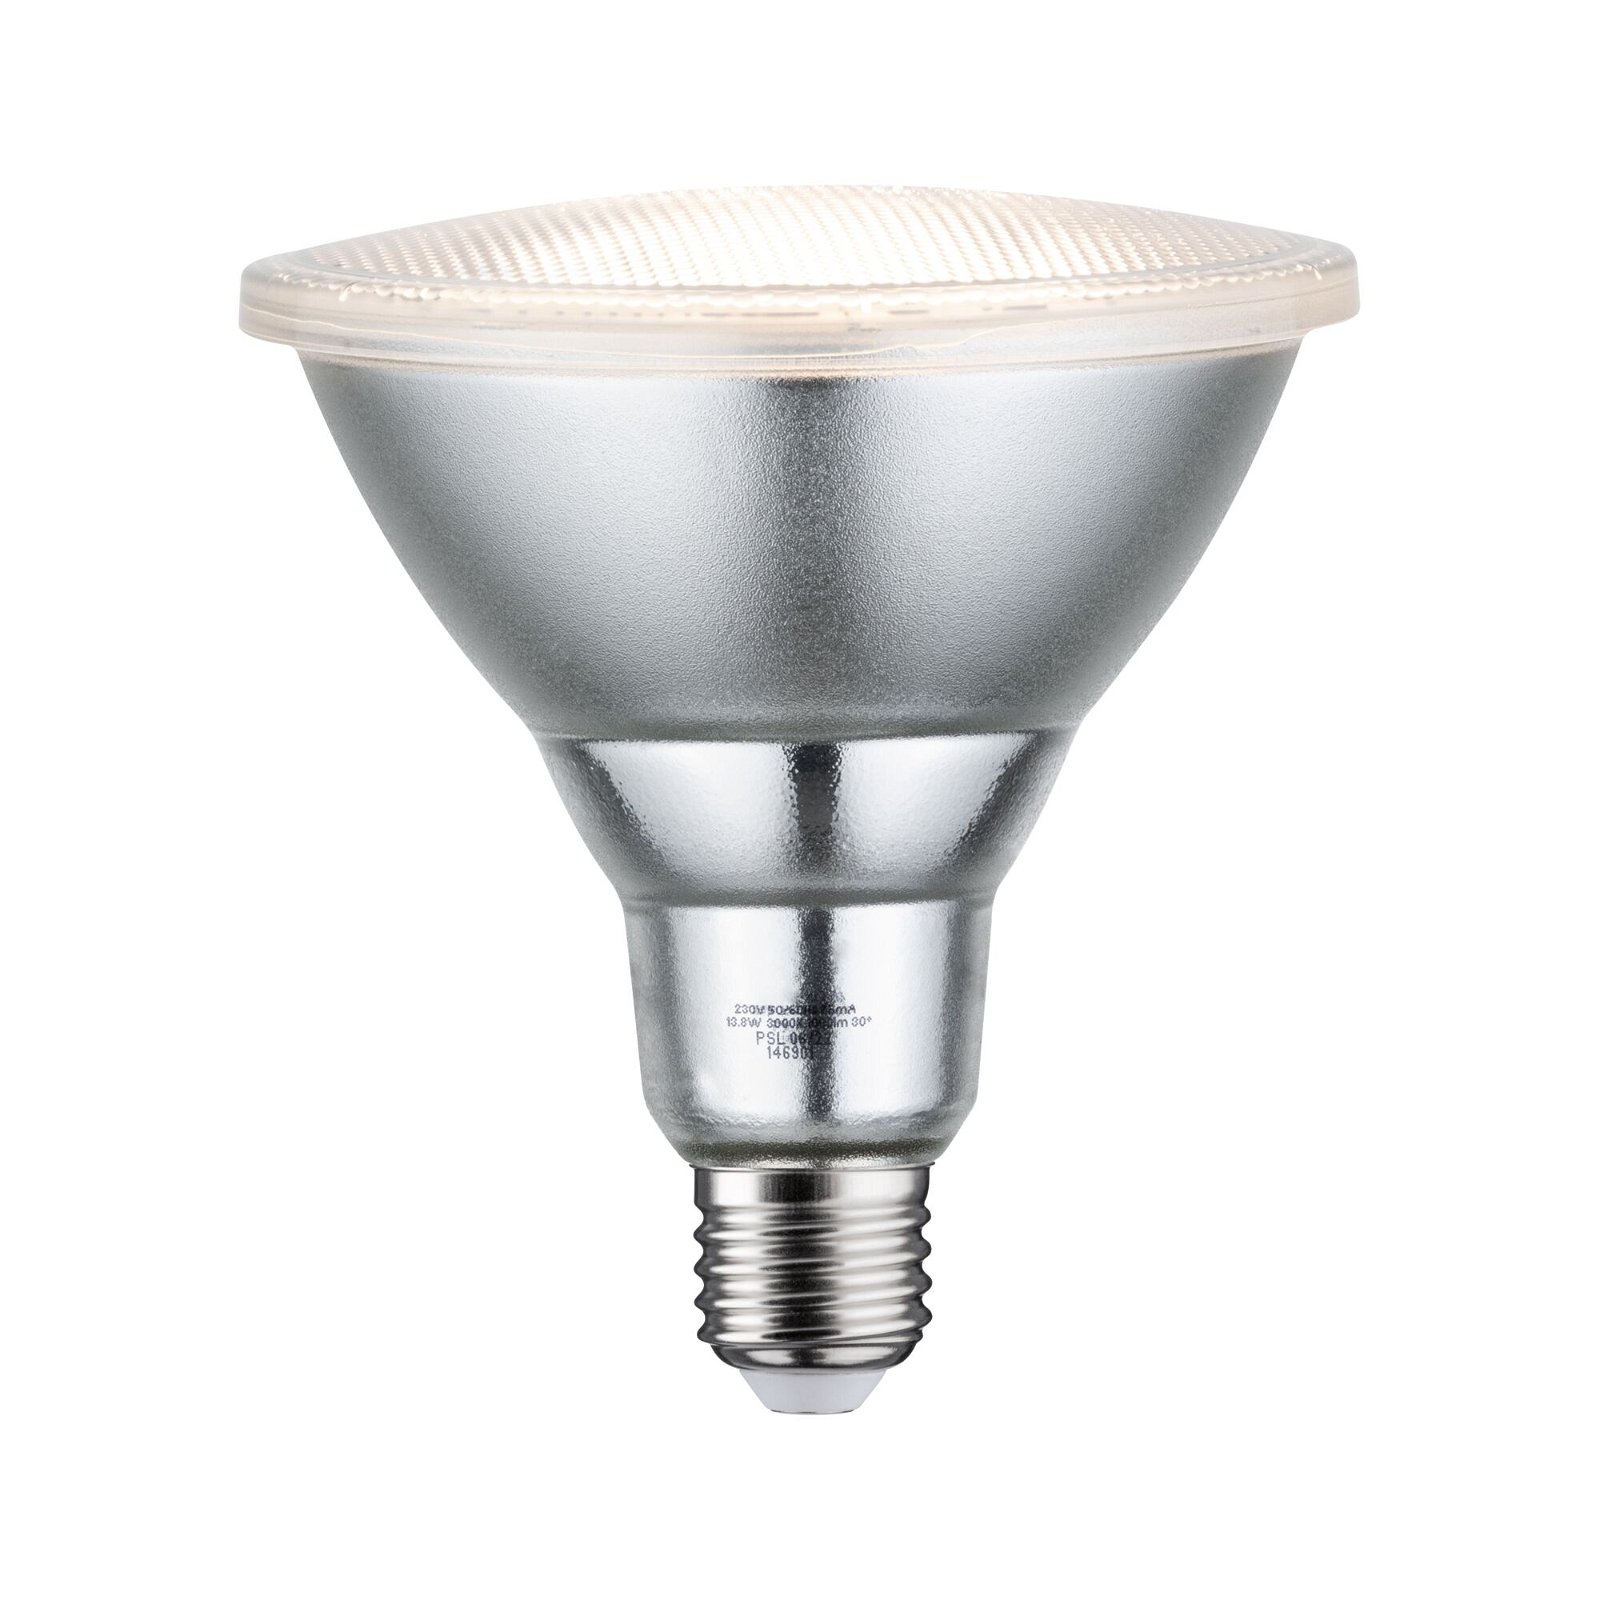 CROWN LED Lot de 3 adaptateurs de culot de lampe de qualité supérieure -  Blanc - Culot GU10 vers culot E27 - Adaptateur de douille pour lampes LED  halogènes à économie d'énergie 